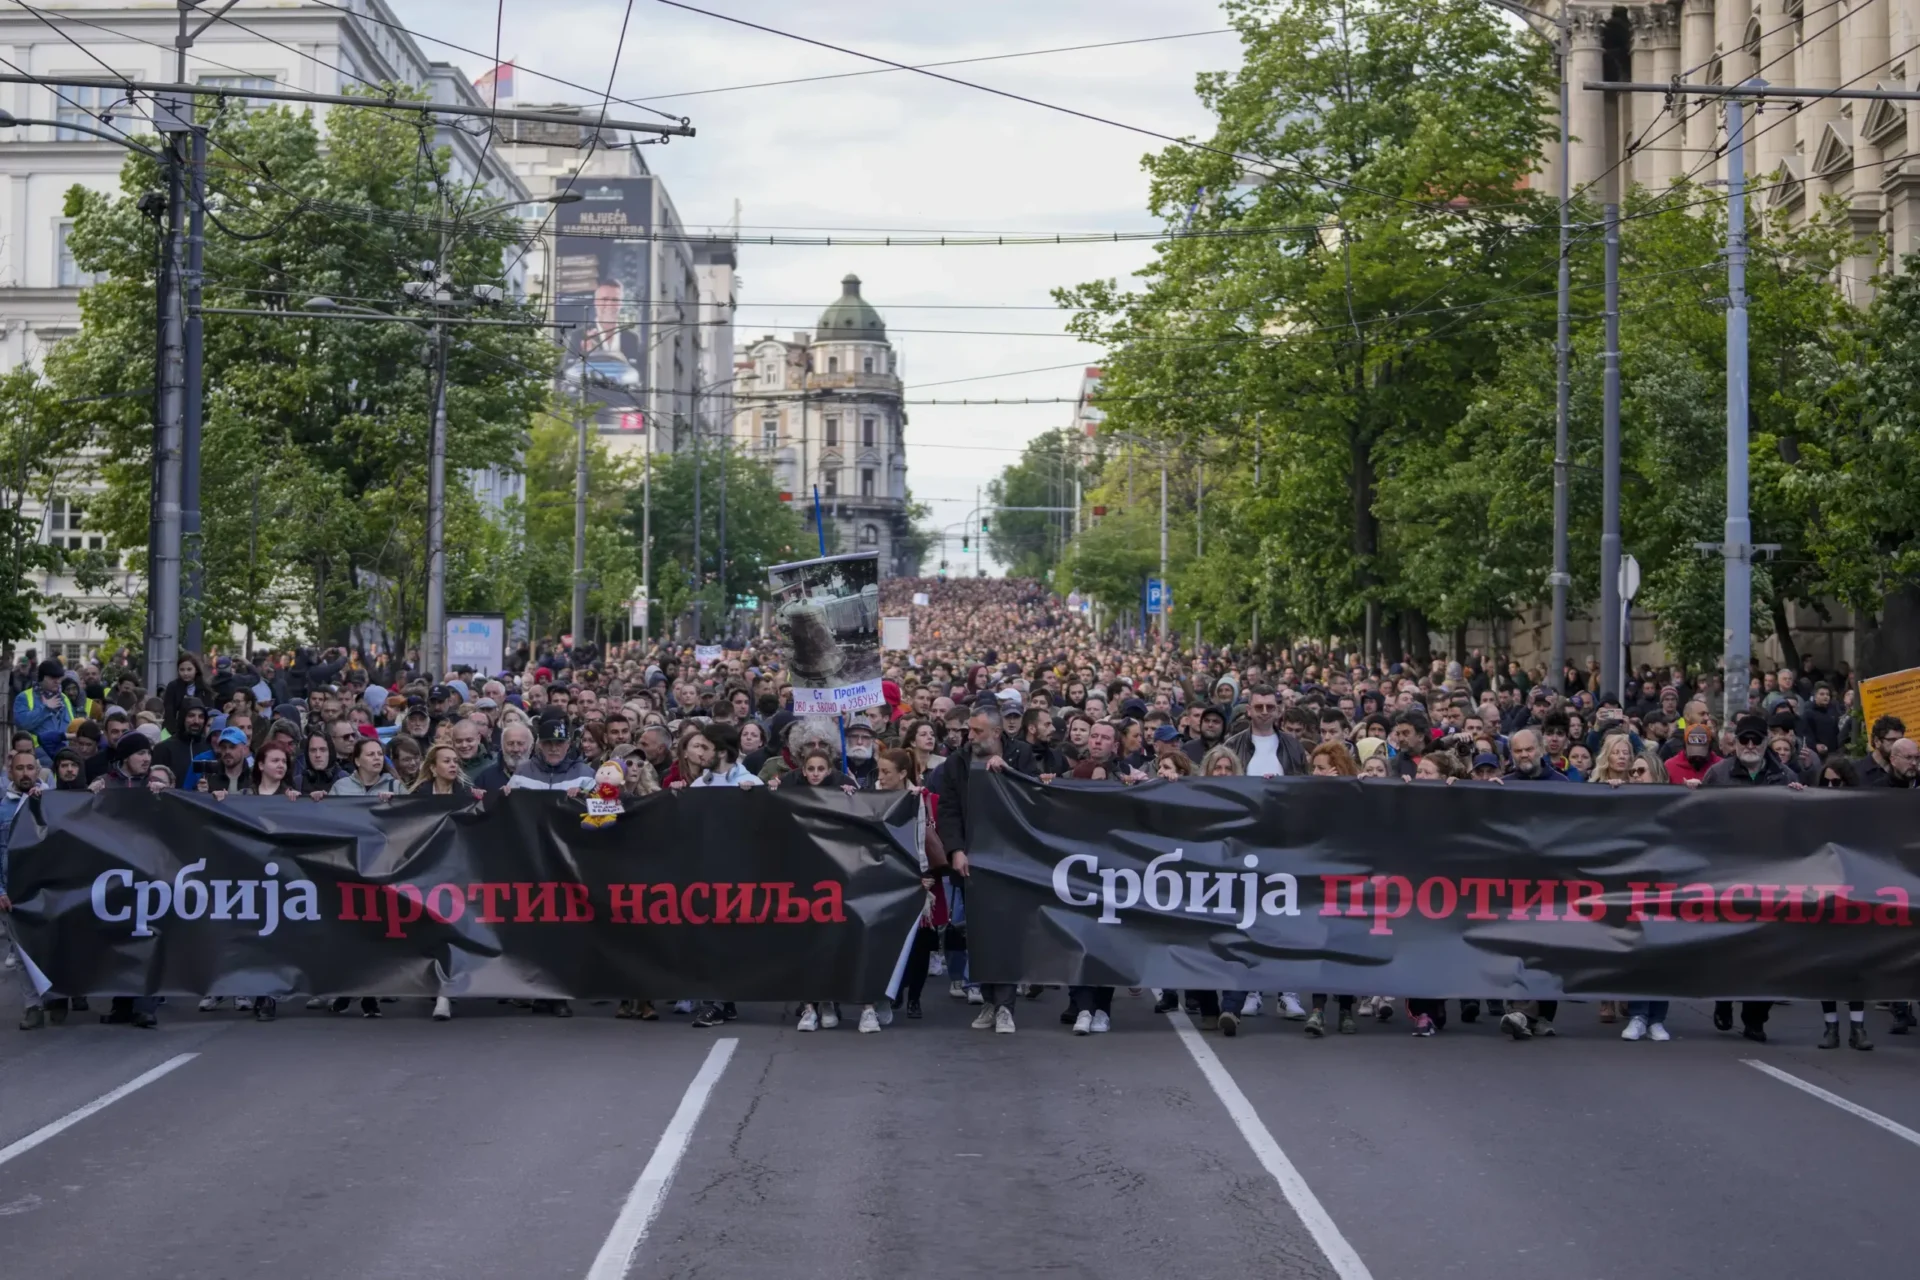 Más protestas contra la violencia en Serbia mientras las autoridades rechazan las críticas y demandas de la oposición